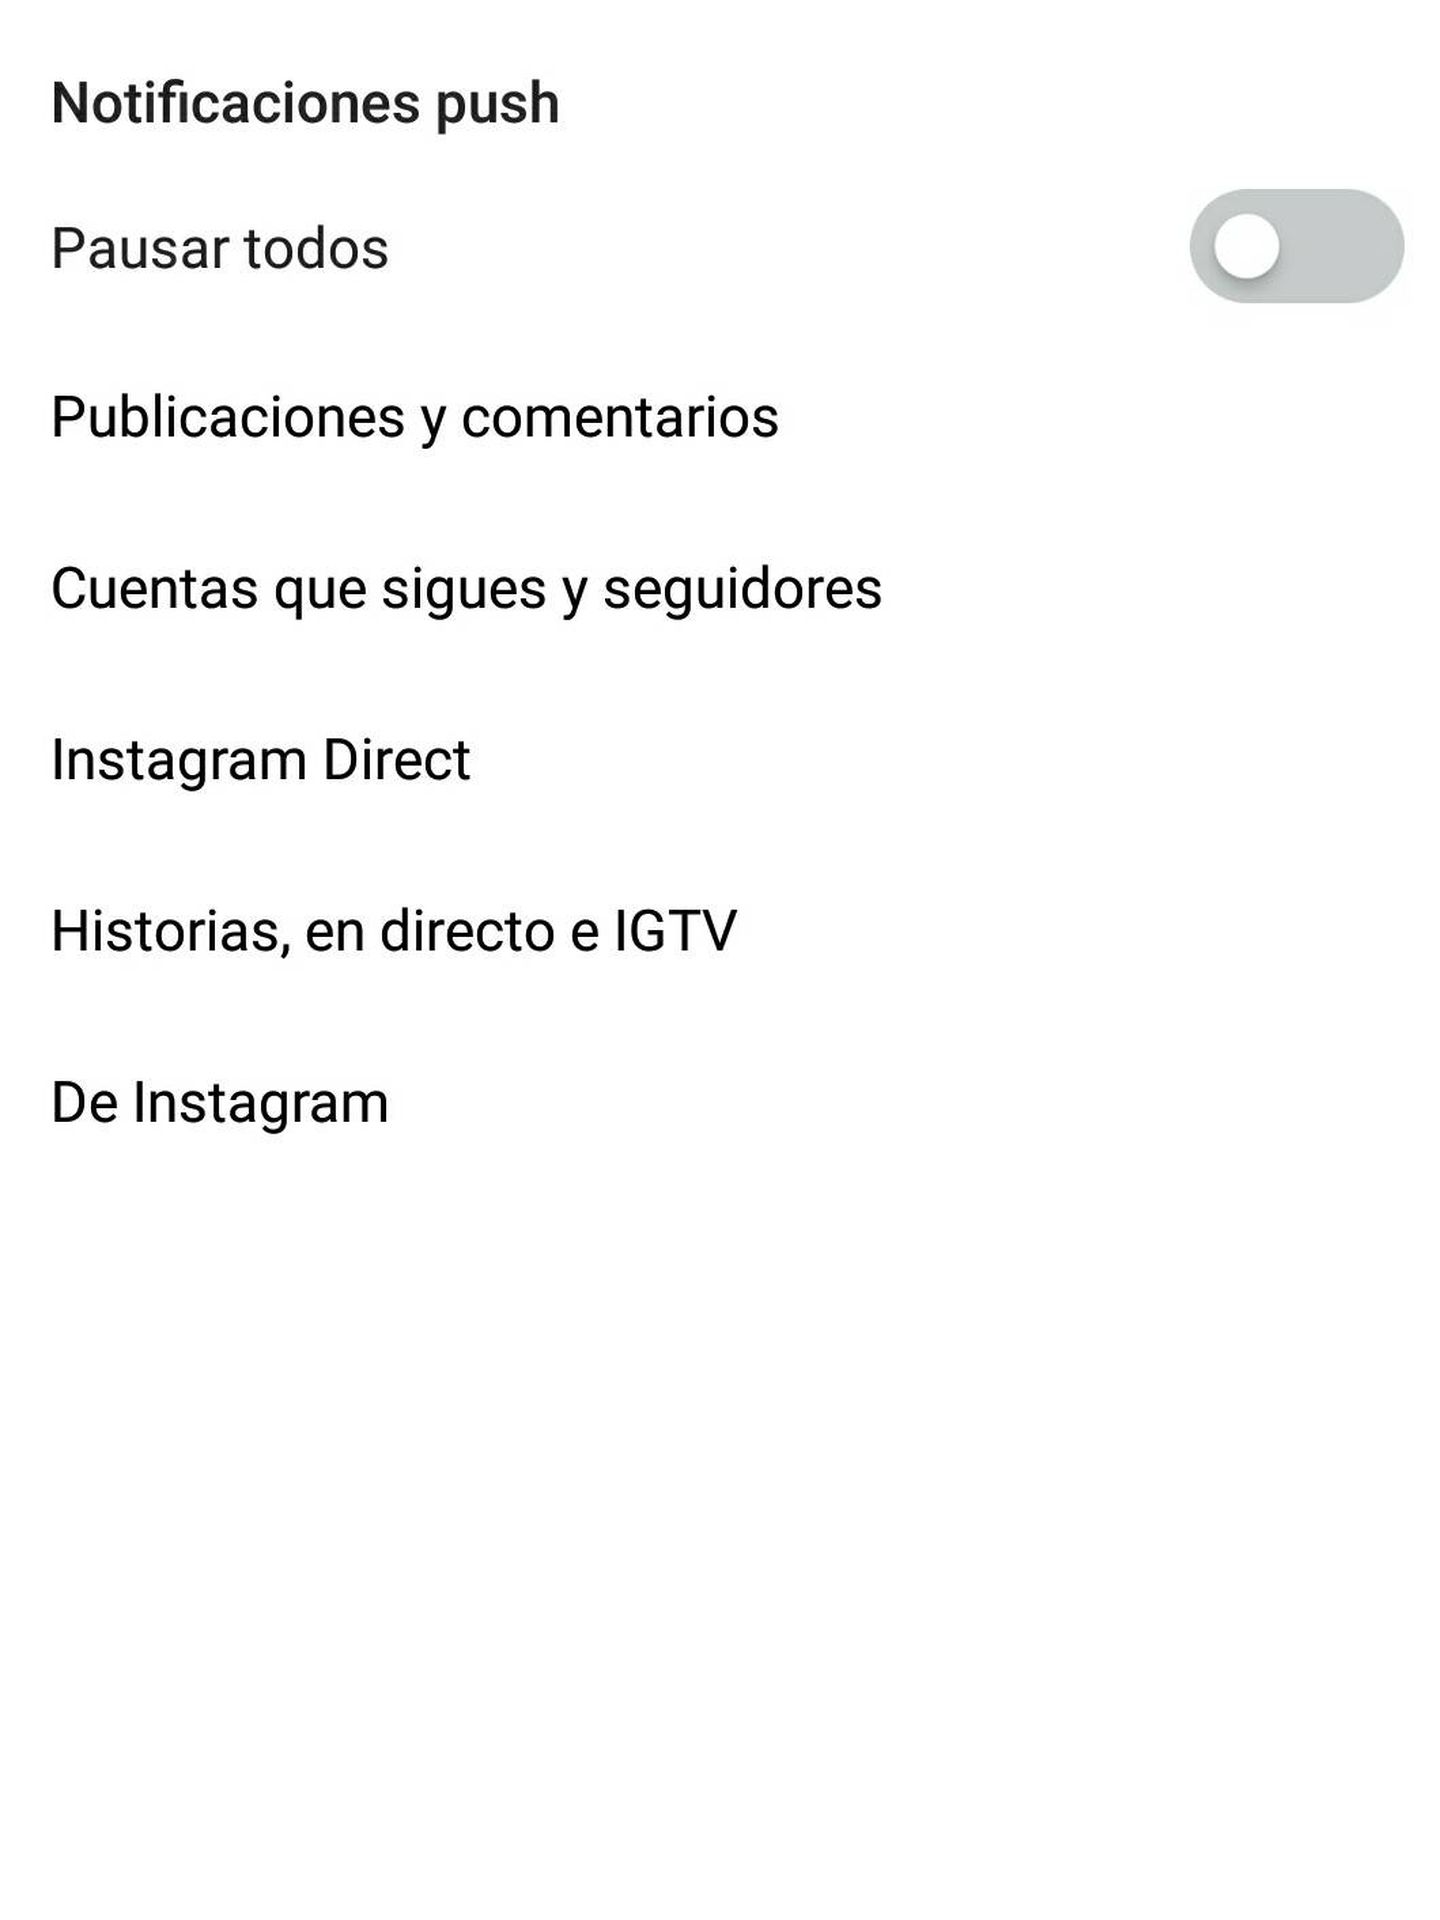 Gestión de las notificaciones de Instagram con la última actualización de la ‘app’.